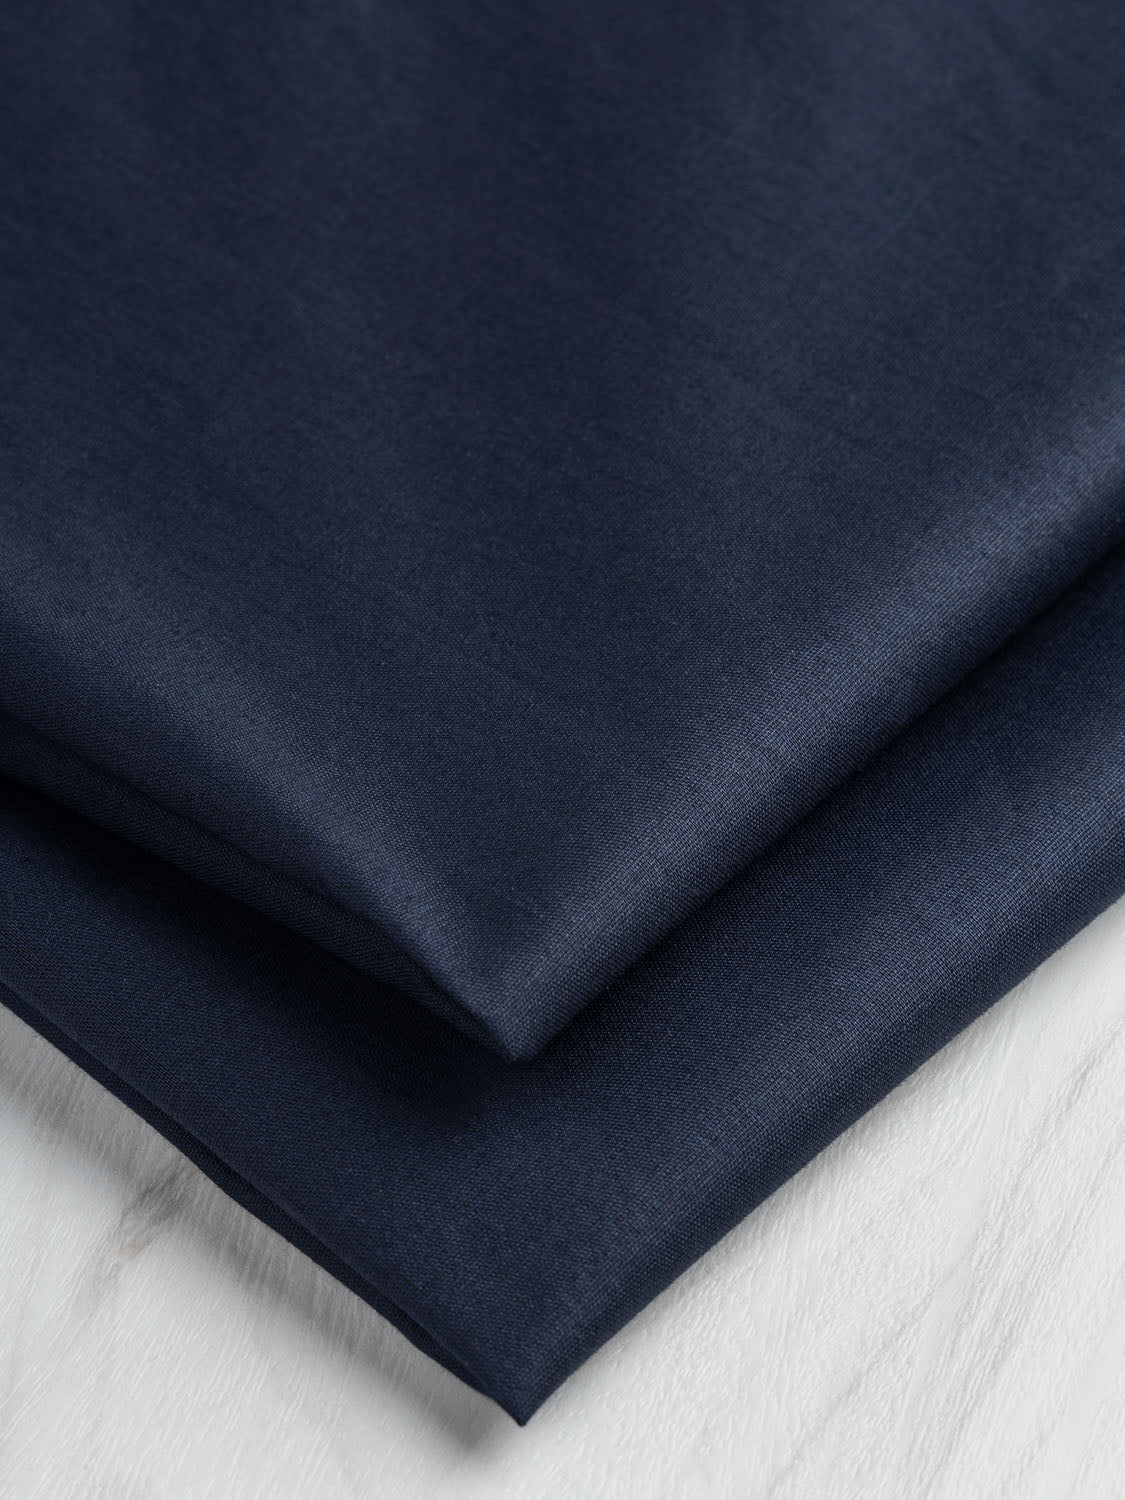 Breezy Cotton Voile - Navy | Core Fabrics